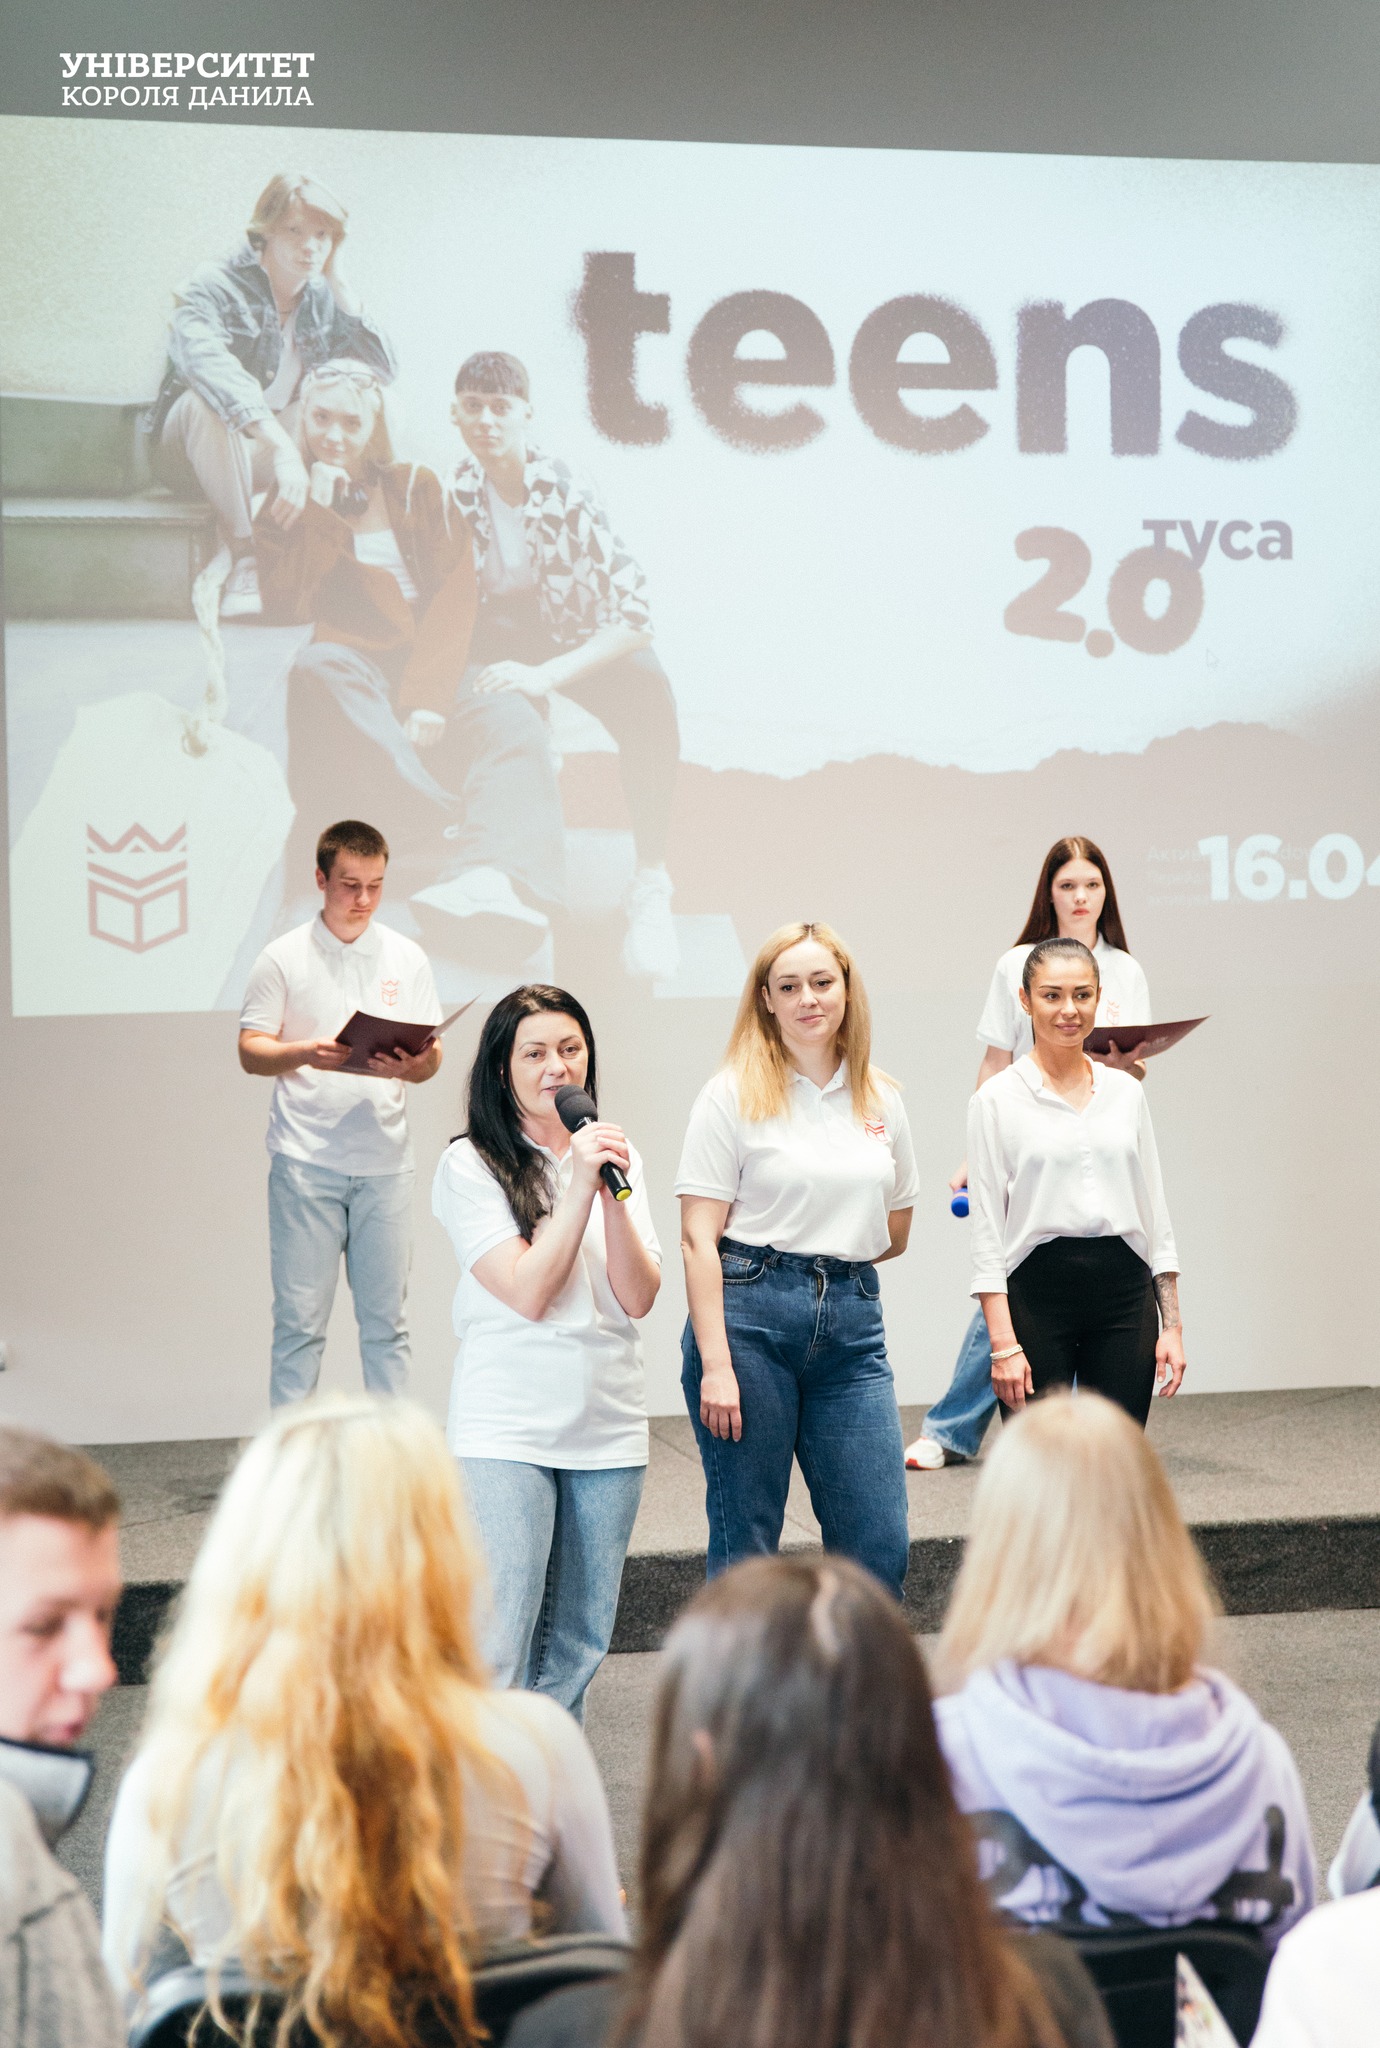 В Університеті Короля Данила відбувся масштабний захід для школярів – TeensТуса 2.0.